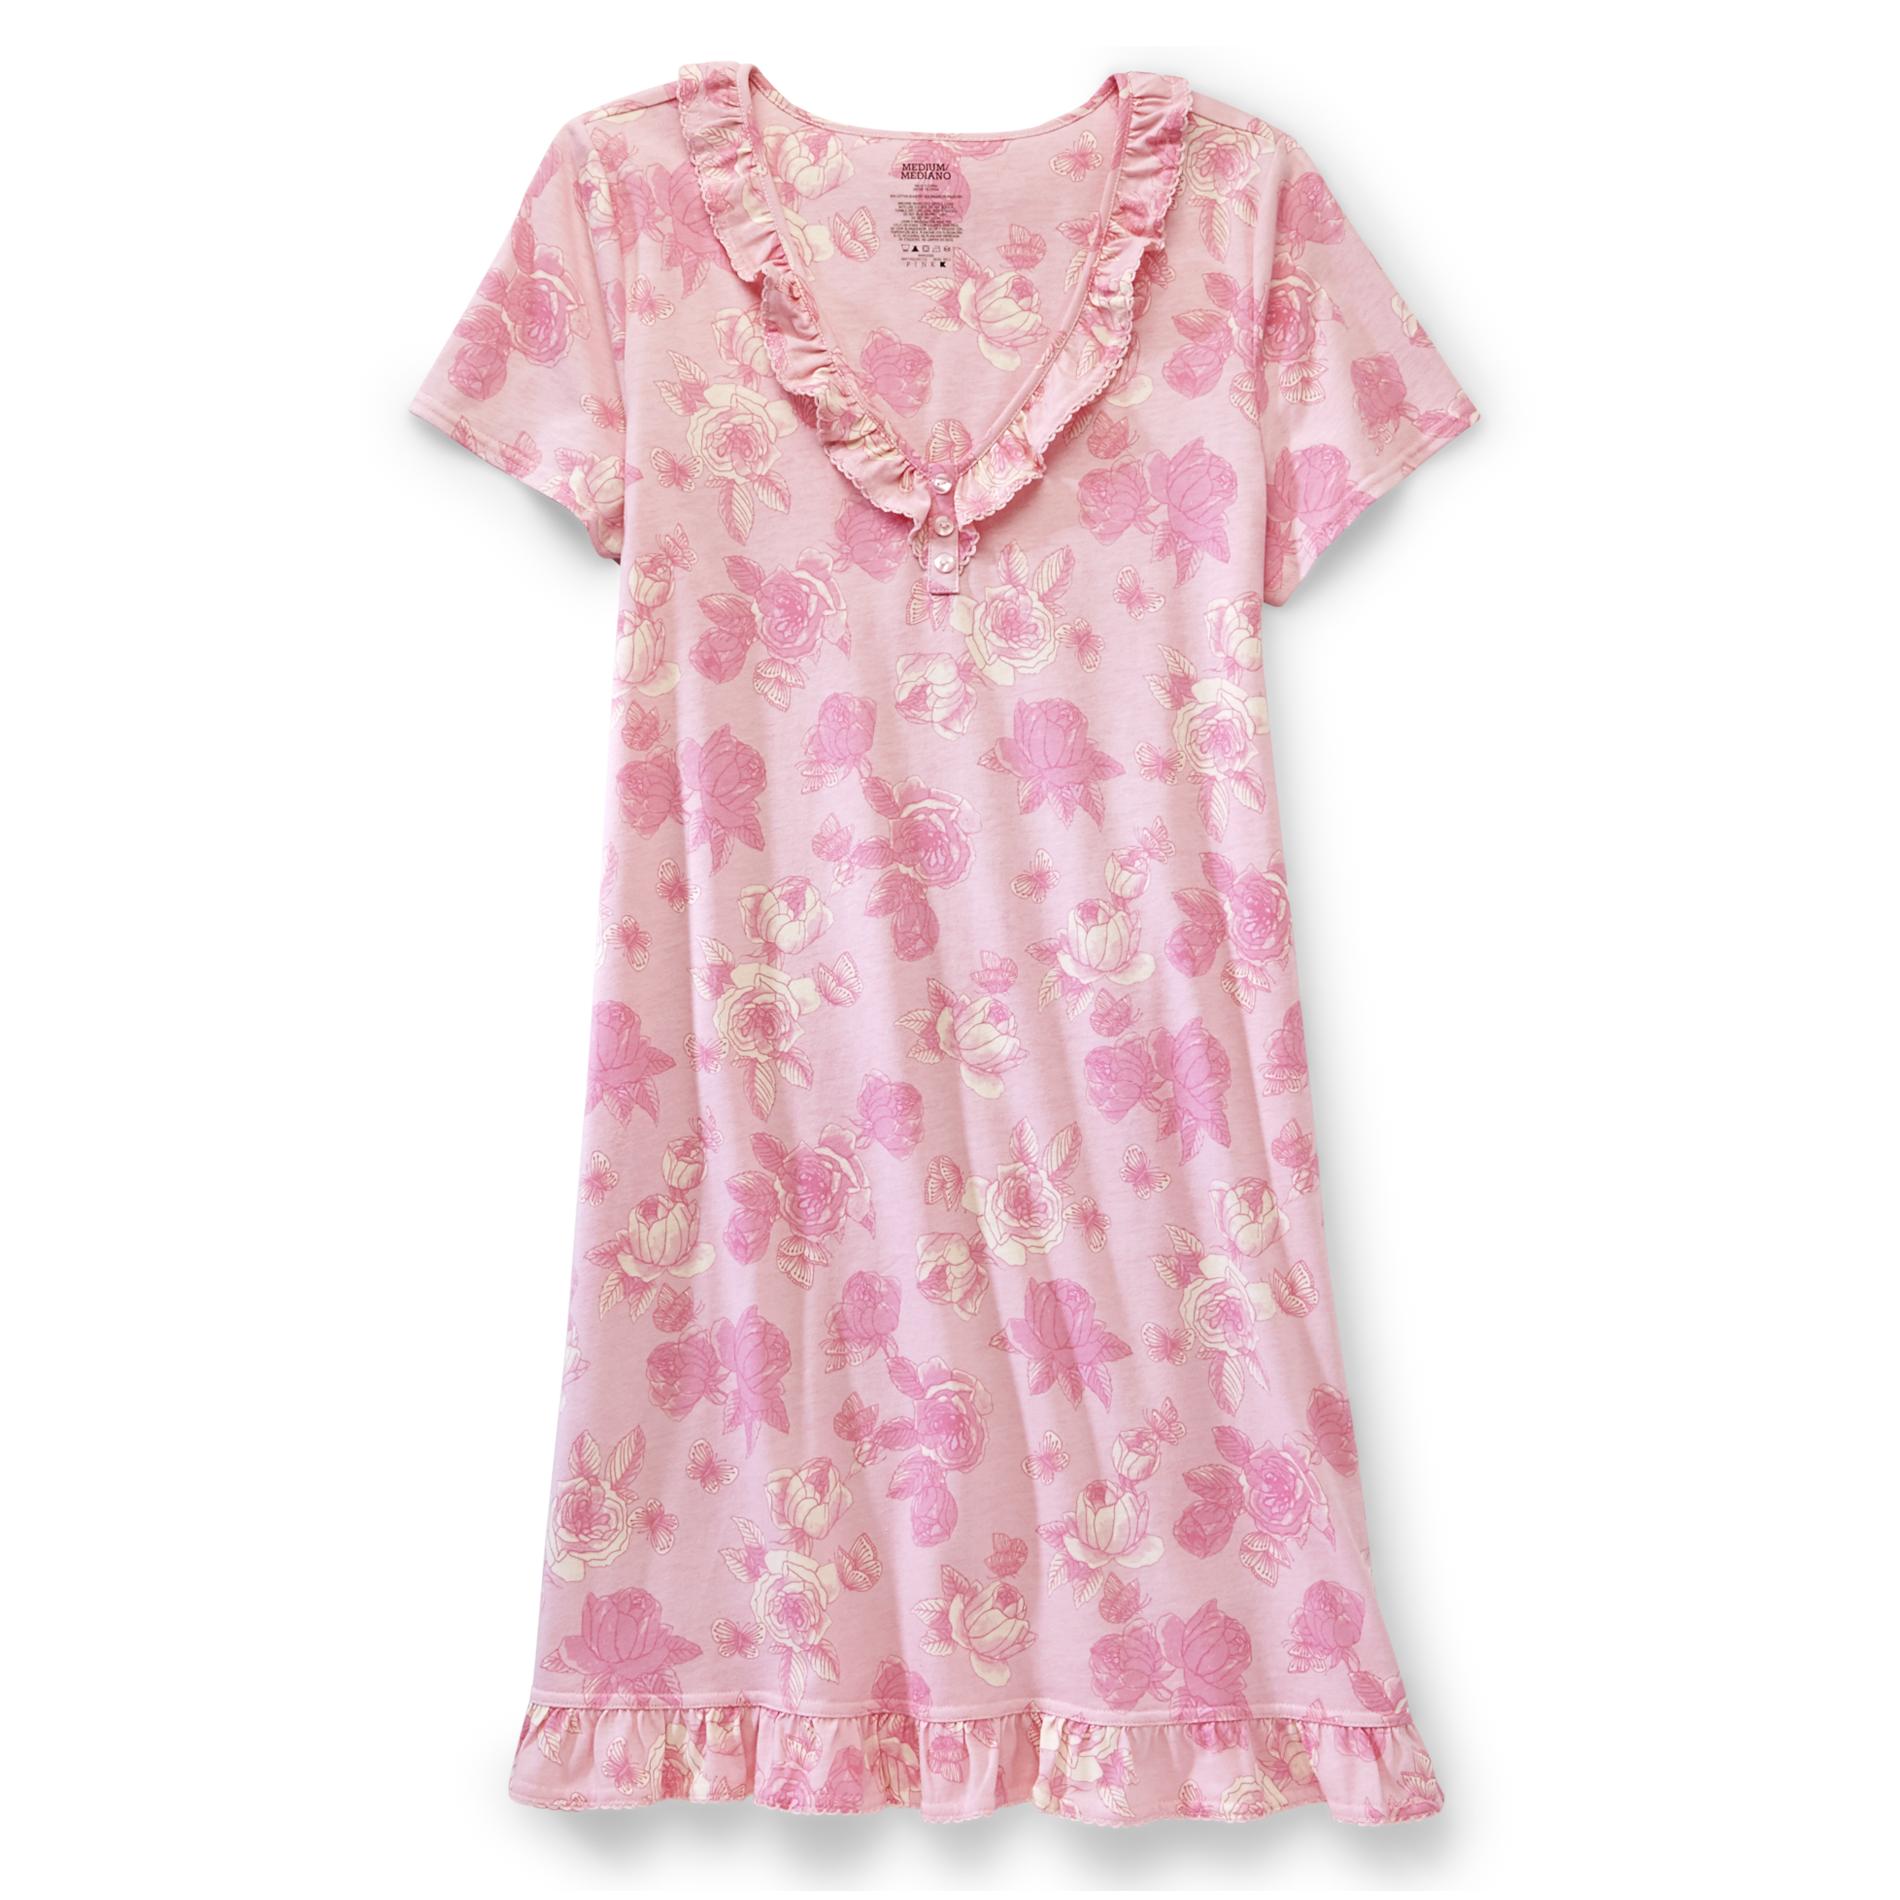 Pink K Women's Short-Sleeve Nightgown - Floral & Butterflies